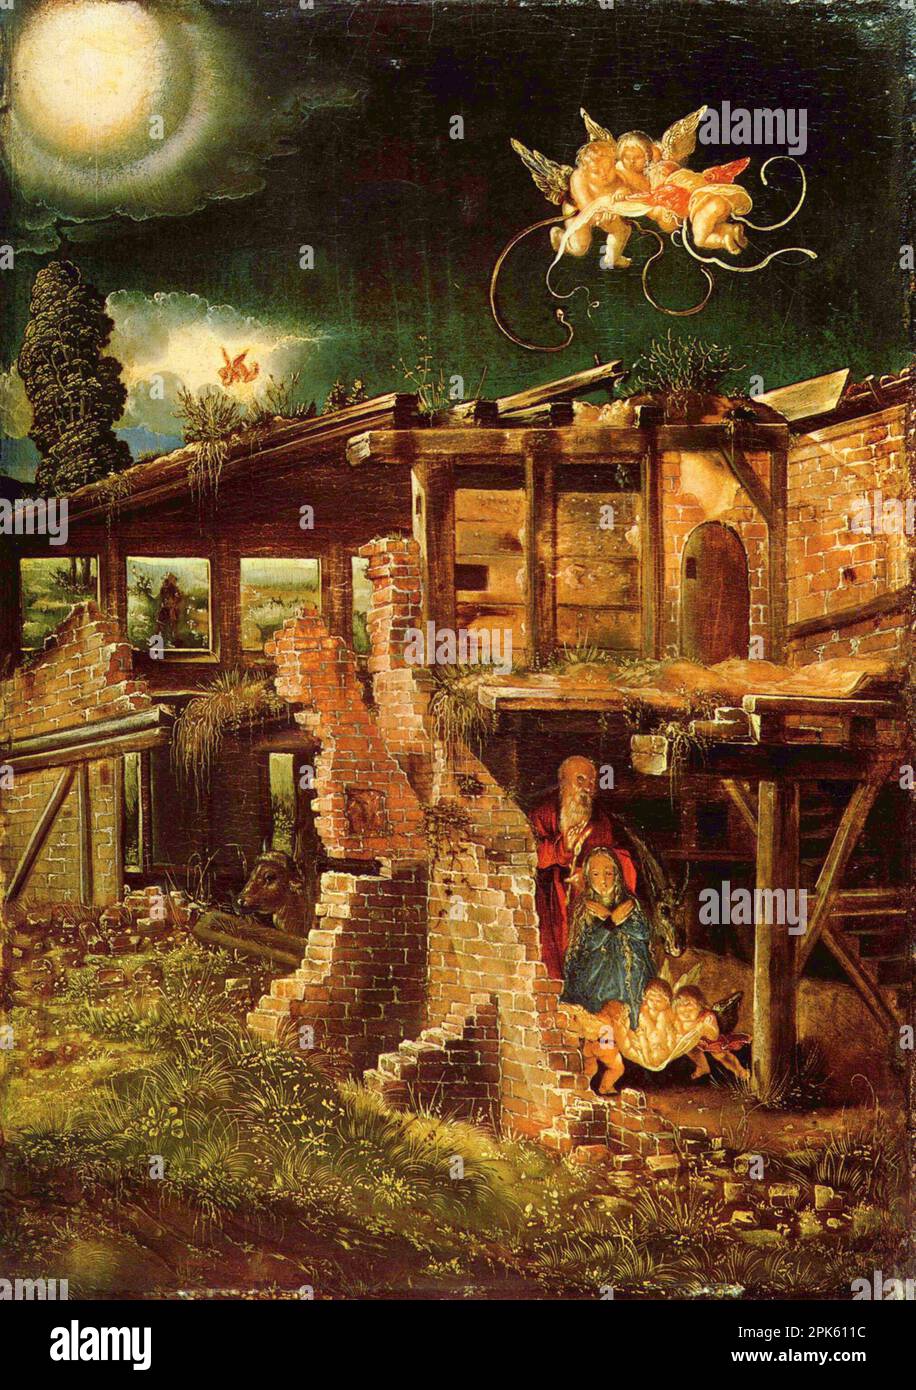 La naissance du Christ peint par Albrecht Altdorfer de l'Ecole du Danube de la Renaissance allemande. Banque D'Images